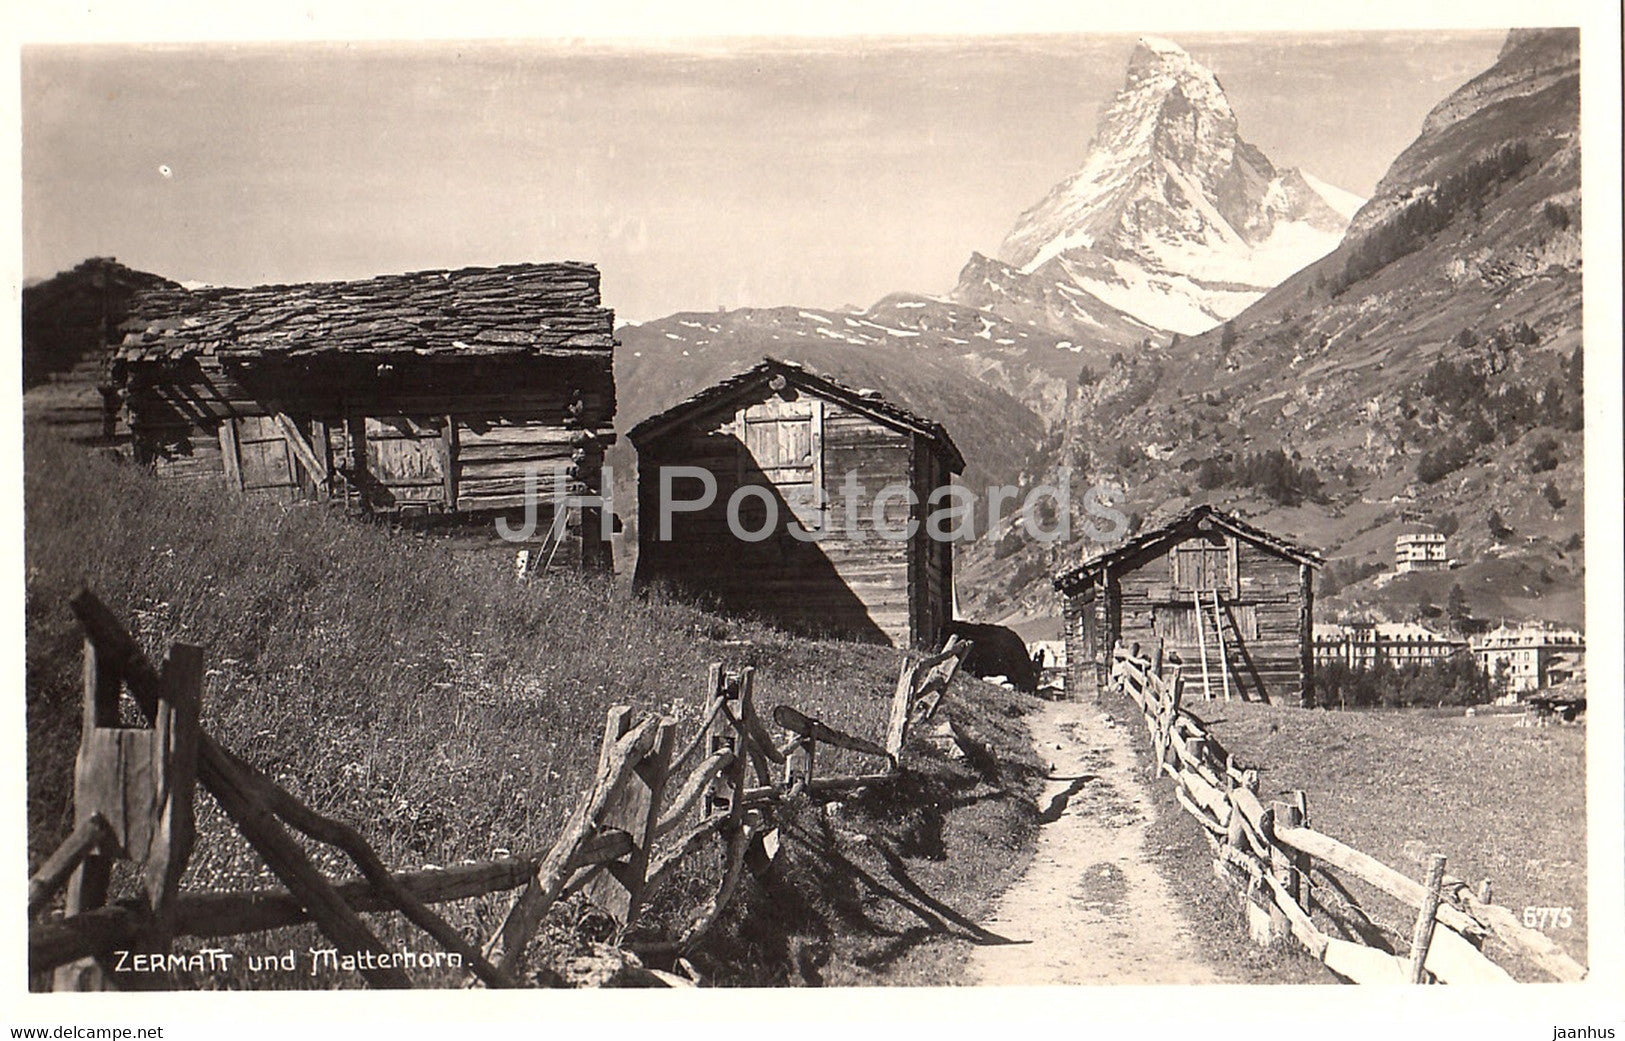 Zermatt und Matterhorn - 6775 - Switzerland - unused - JH Postcards